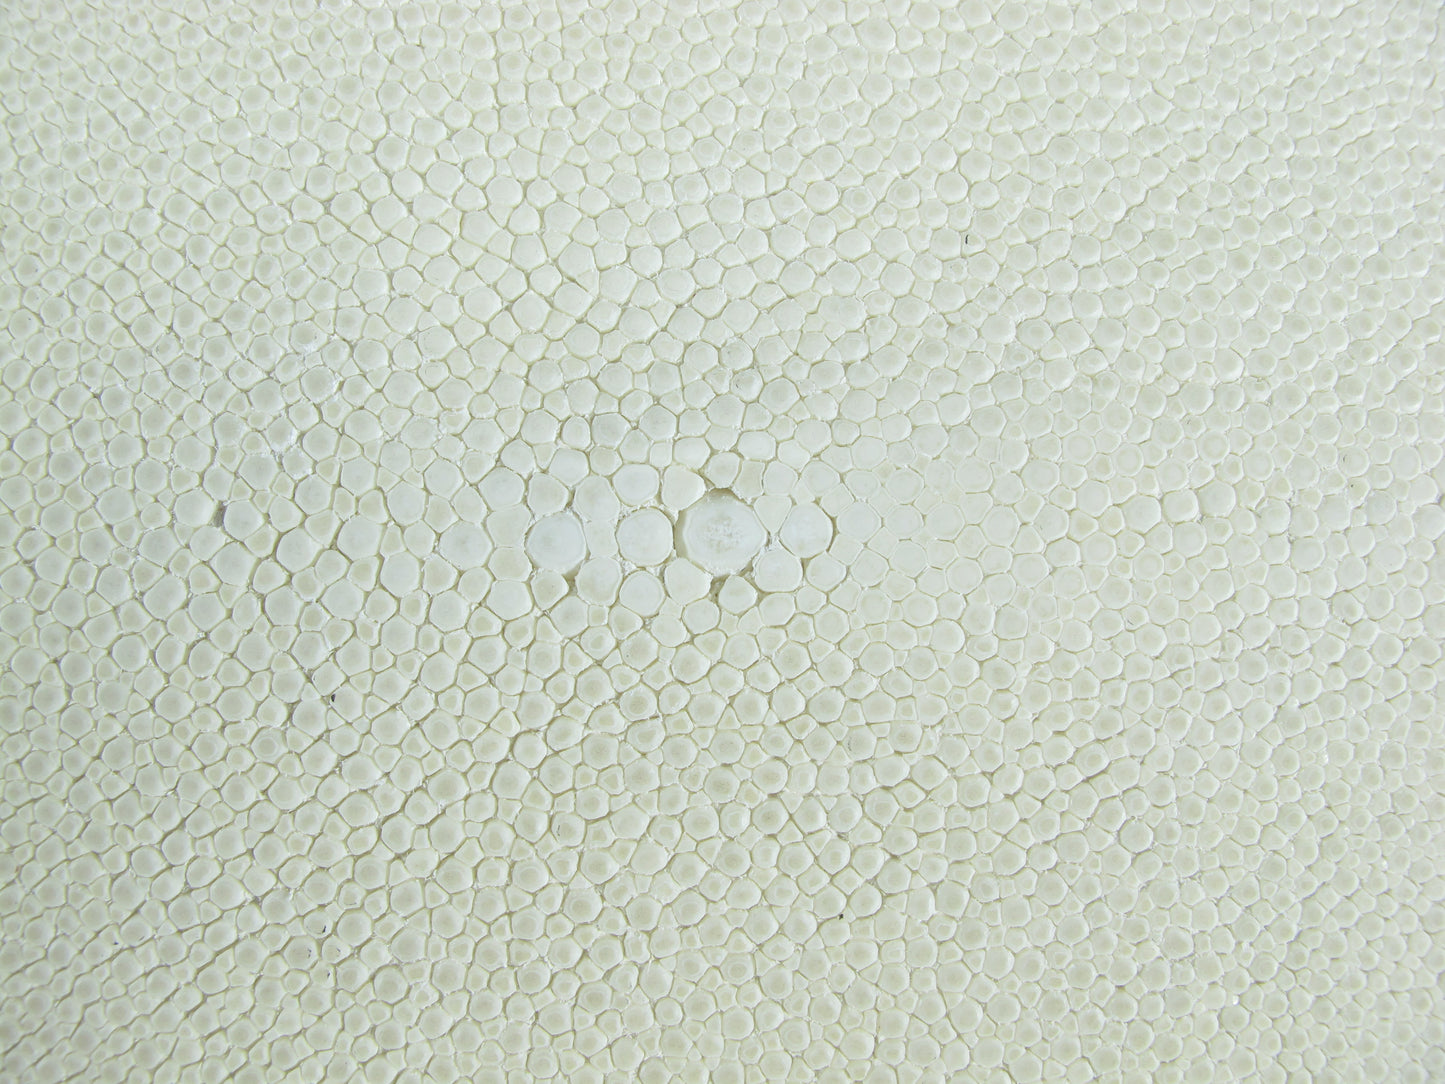 Genuine Polished Stingray Skin Leather Hide Pelt Long Shape Natural